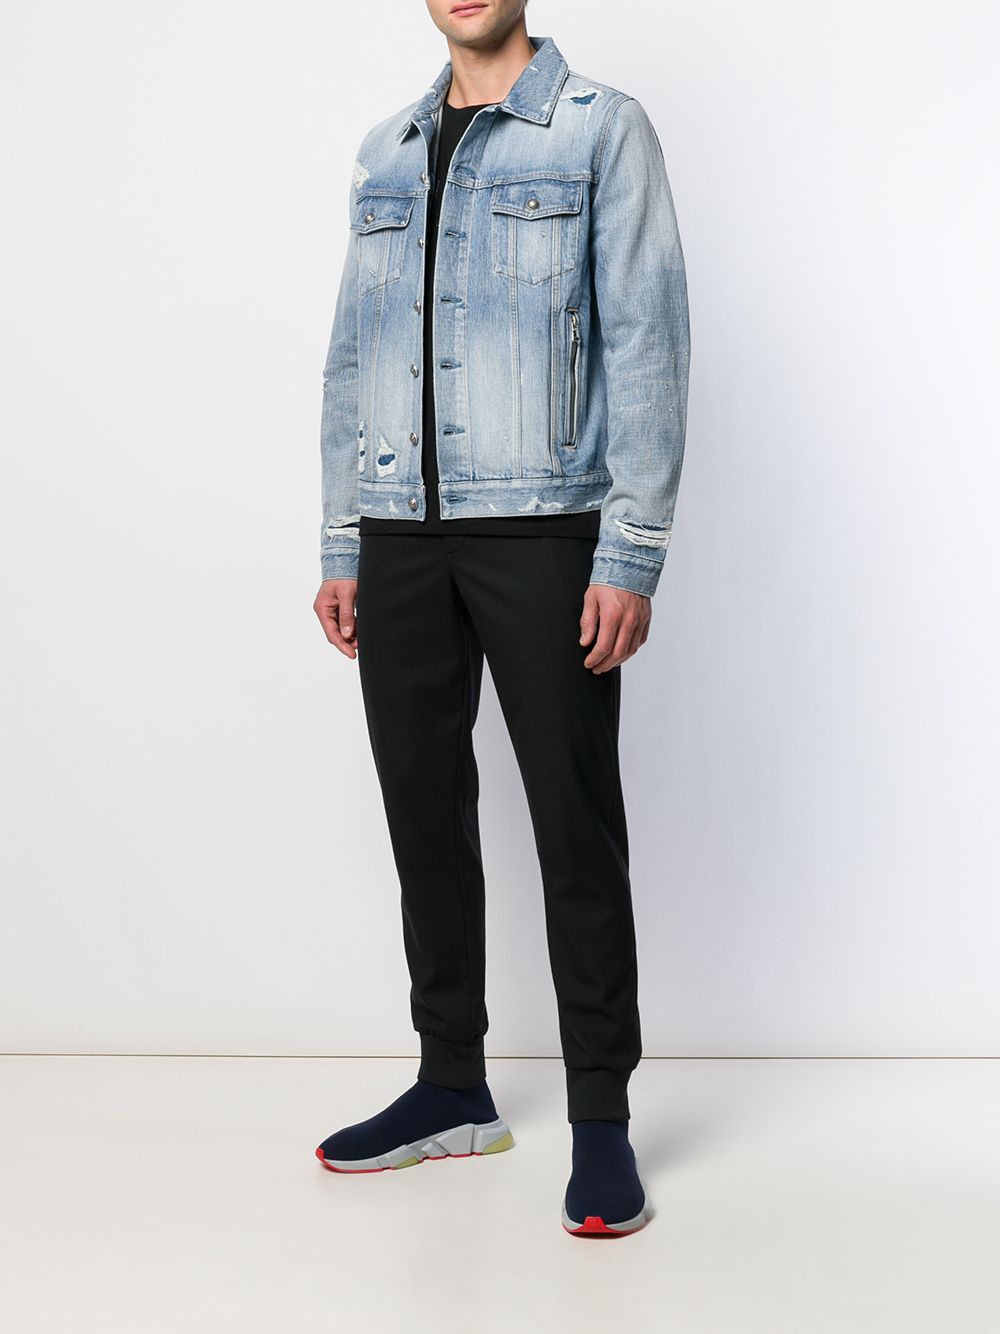 фото Balmain джинсовая куртка с эффектом потертости